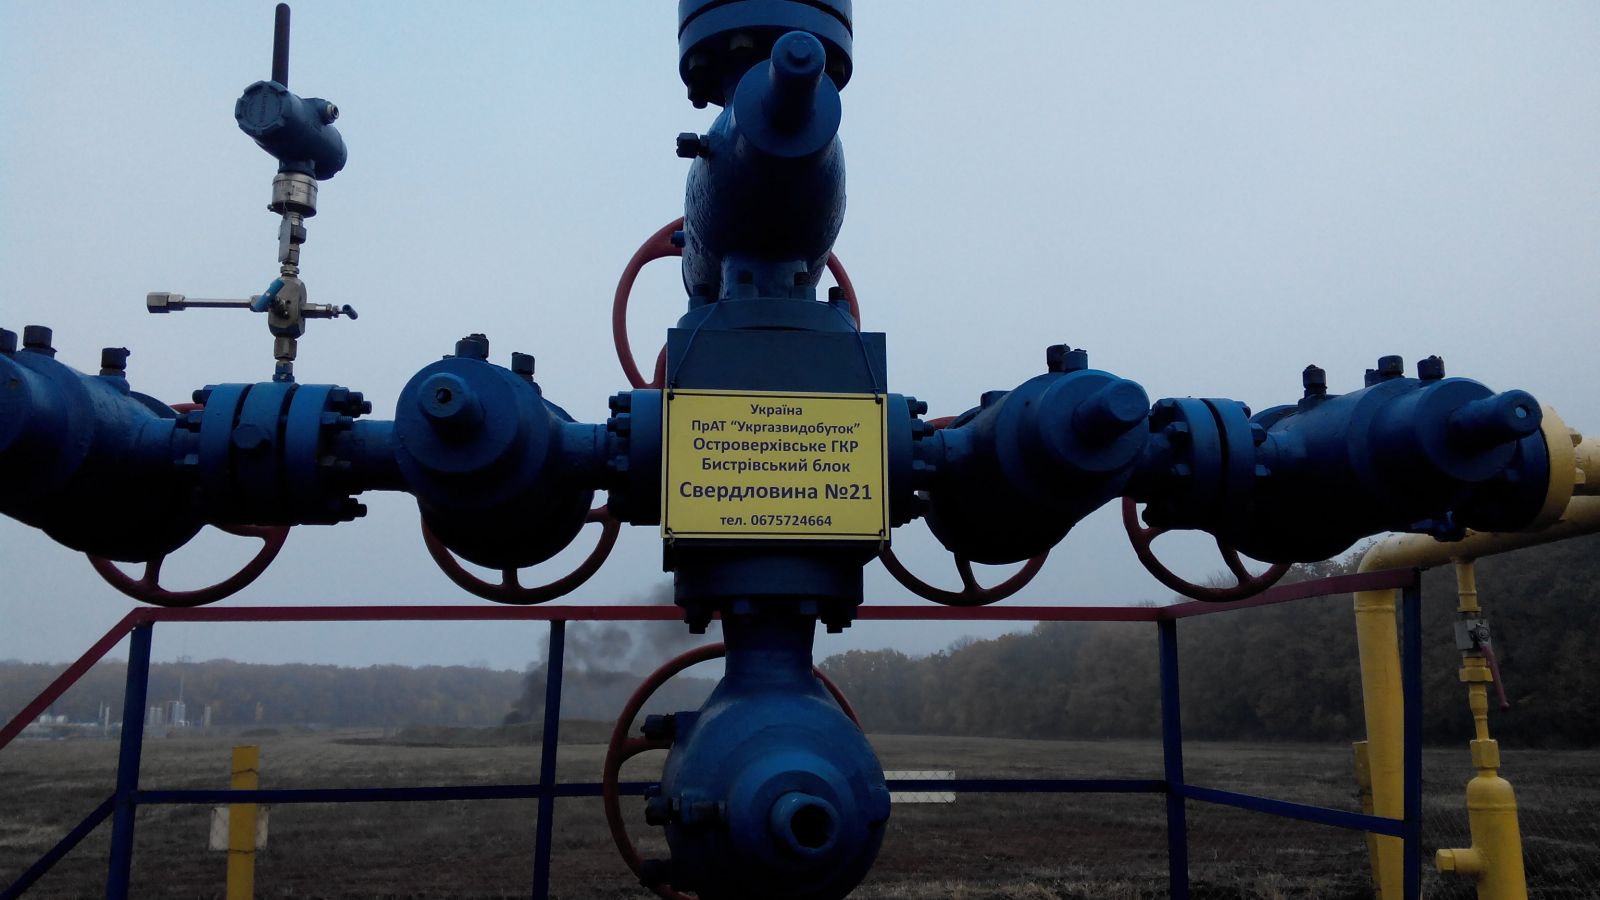 ЧАО "Укргазвидобуток" ввела в эксплуатацию скважину после капитального ремонта